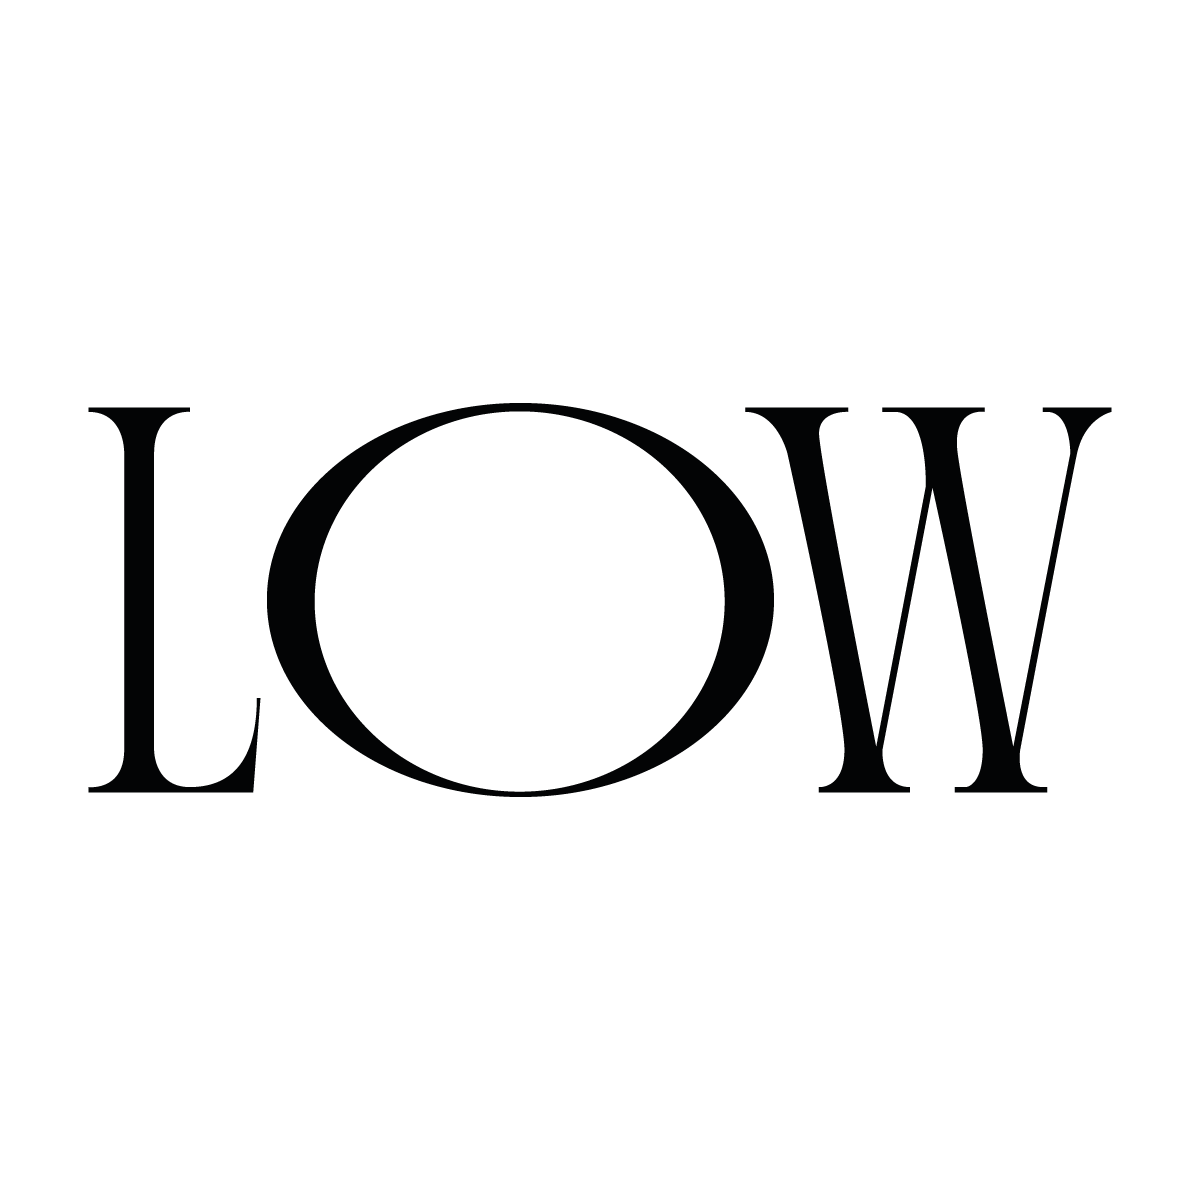 Low low